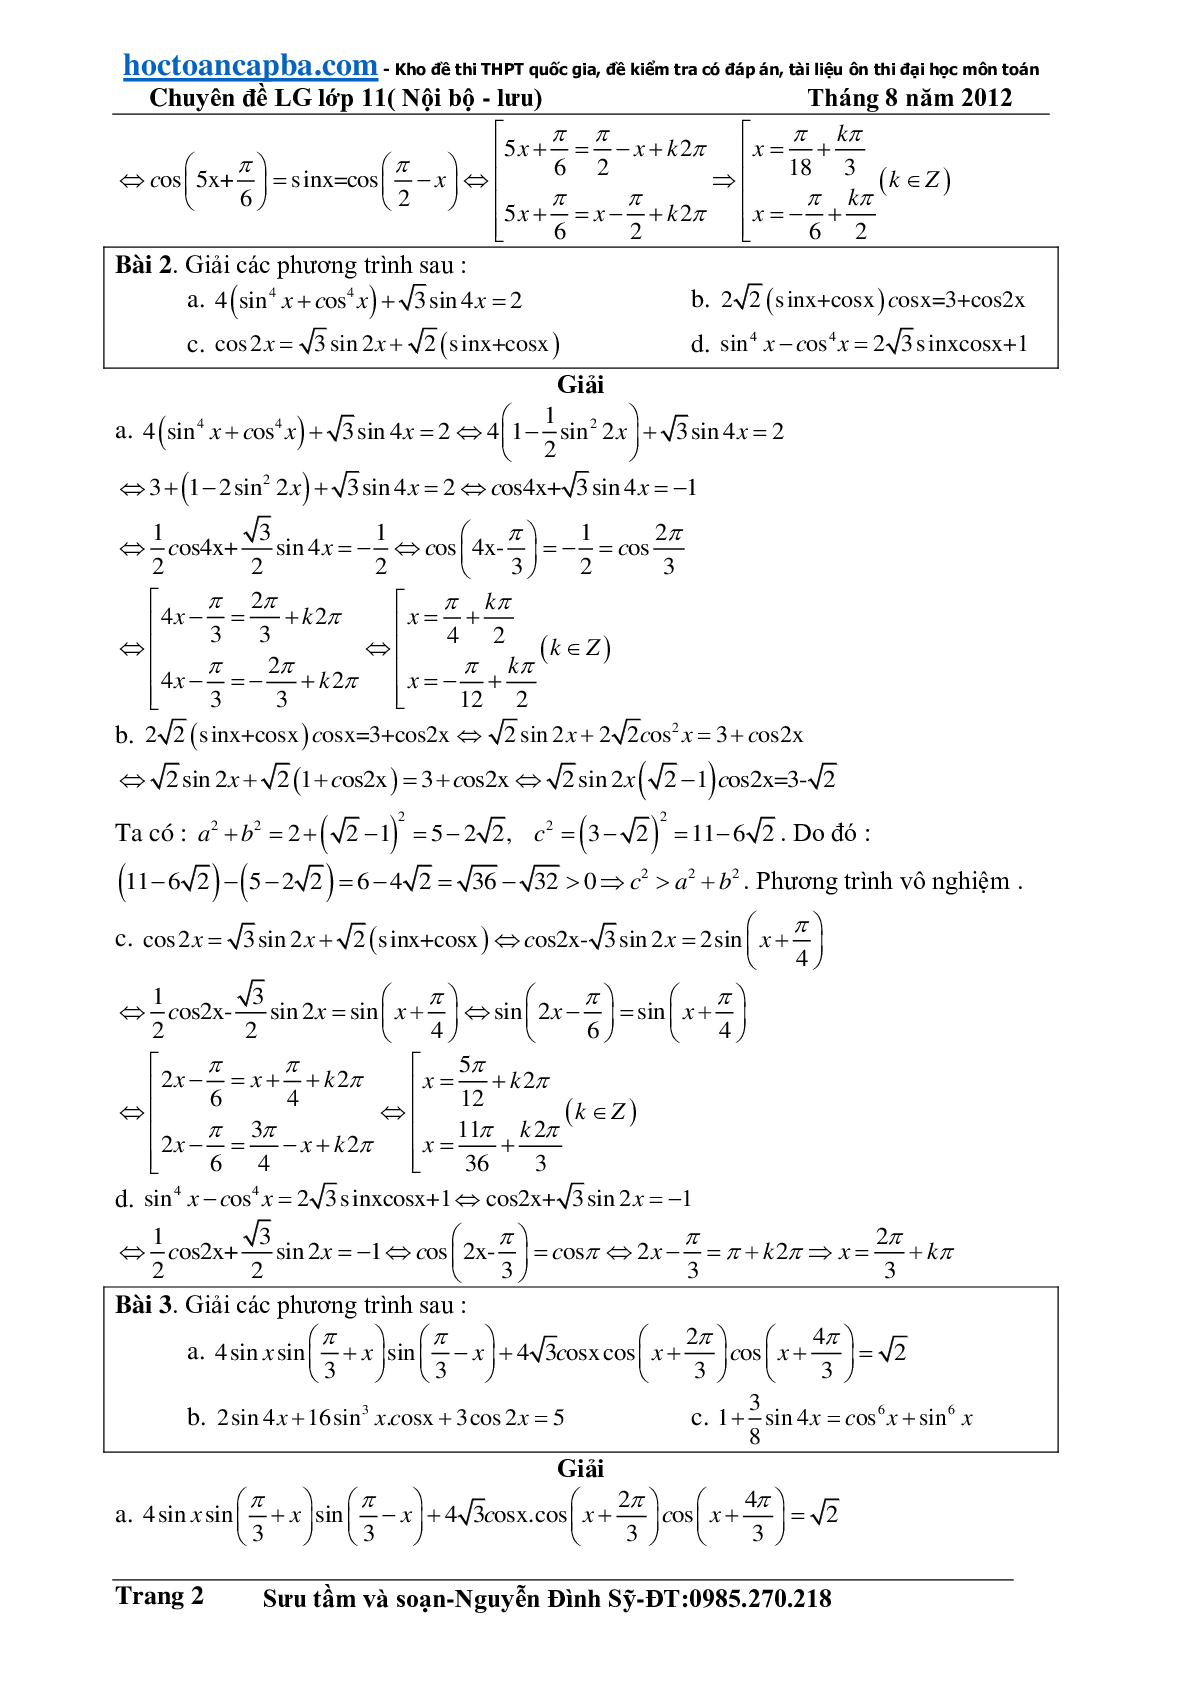 Hướng dẫn giải phương trình lượng giác cơ bản và đơn giản (trang 2)